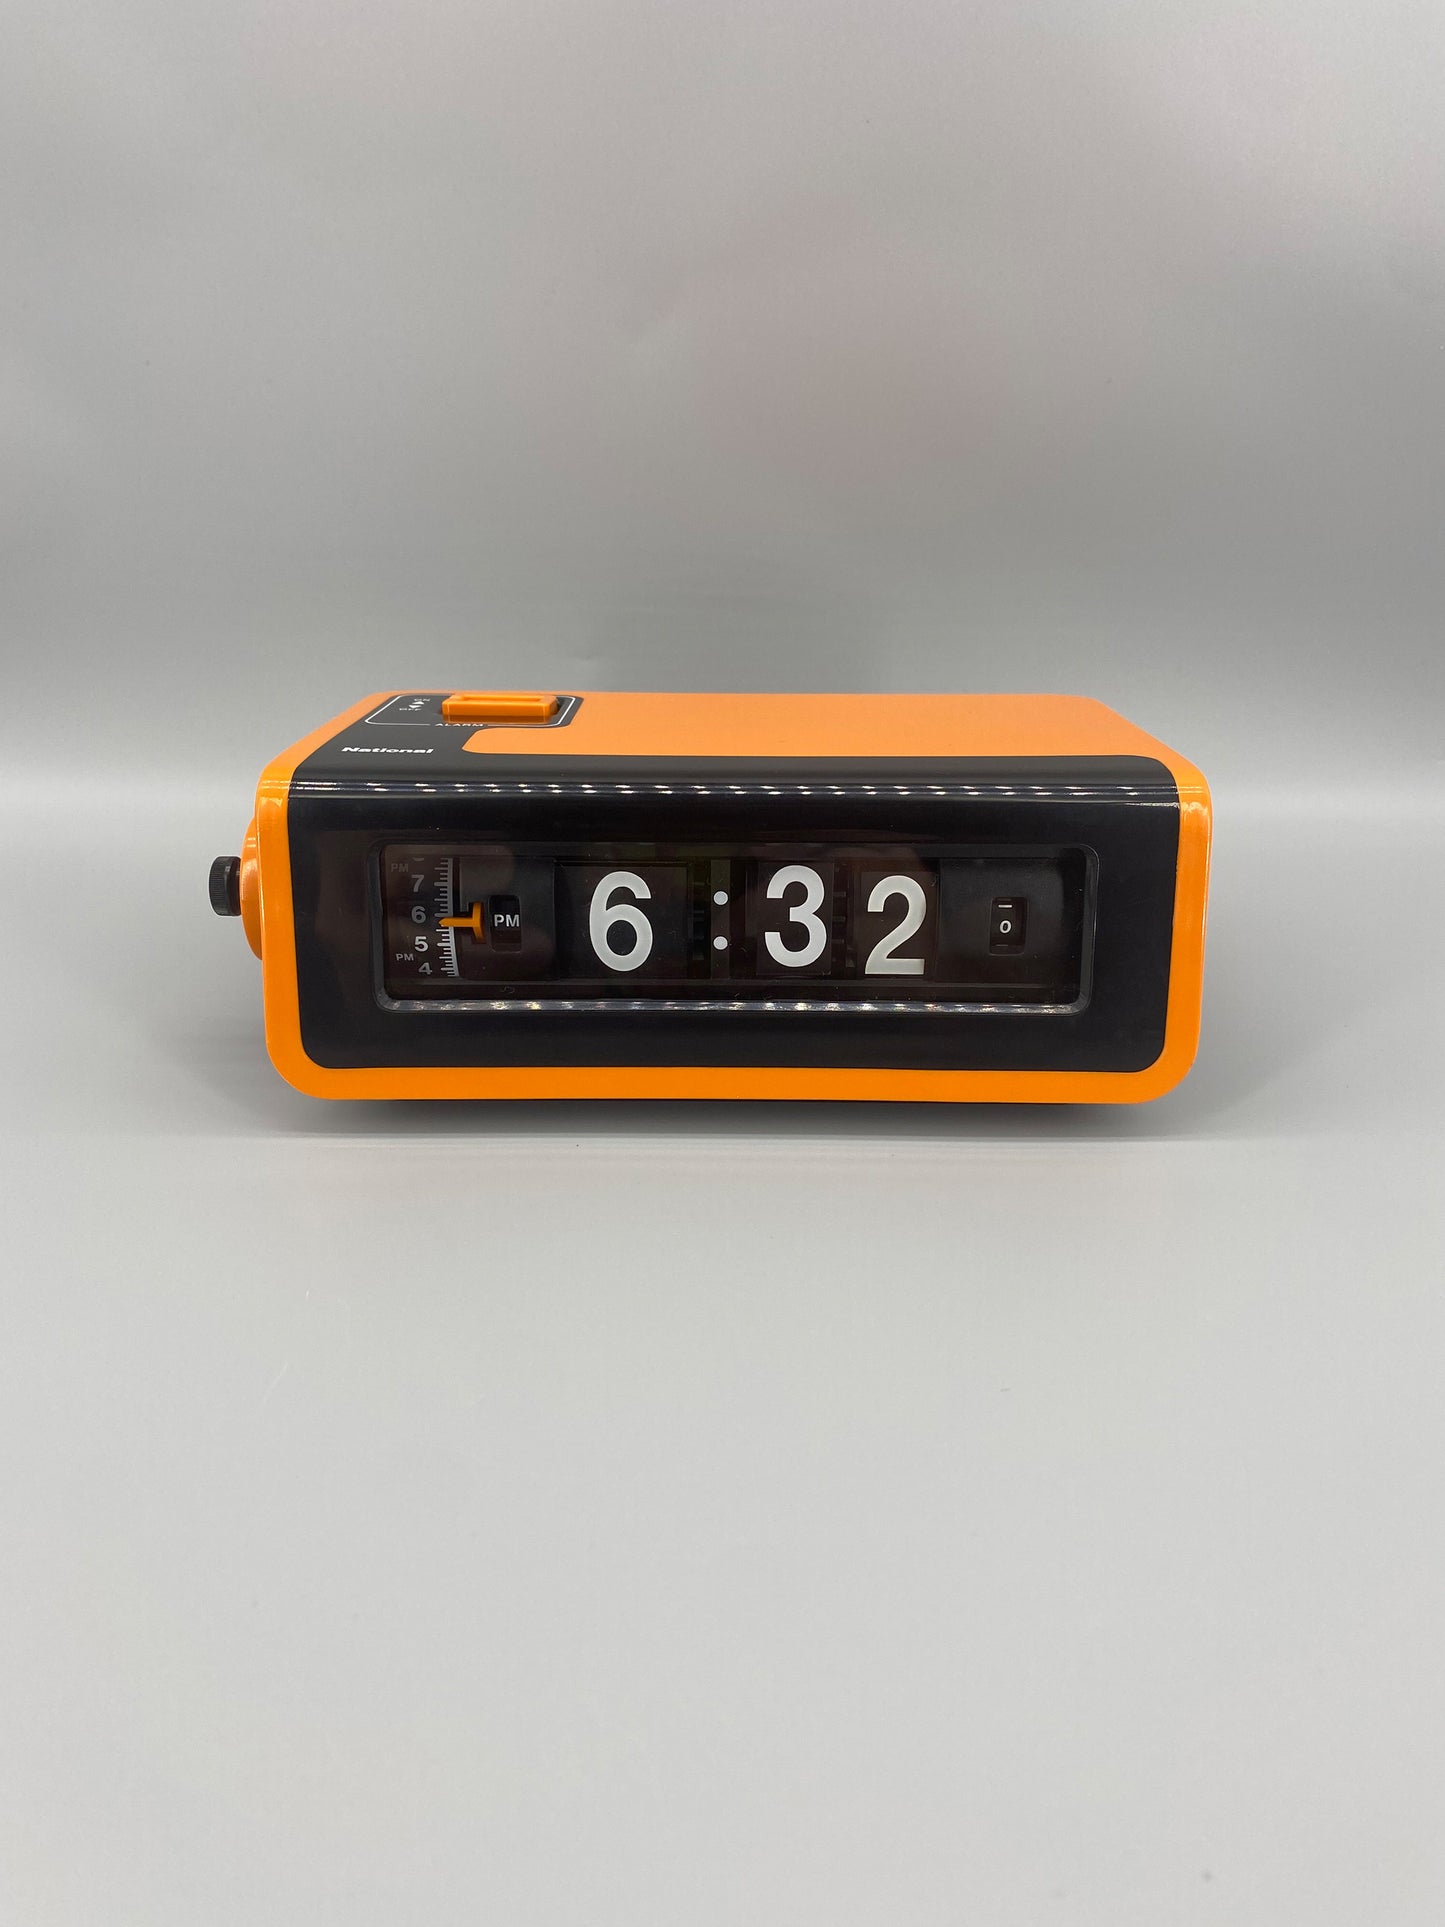 日本制 70s National TG02 Alarm Flip Clock 翻頁鐘 橙色 有盒